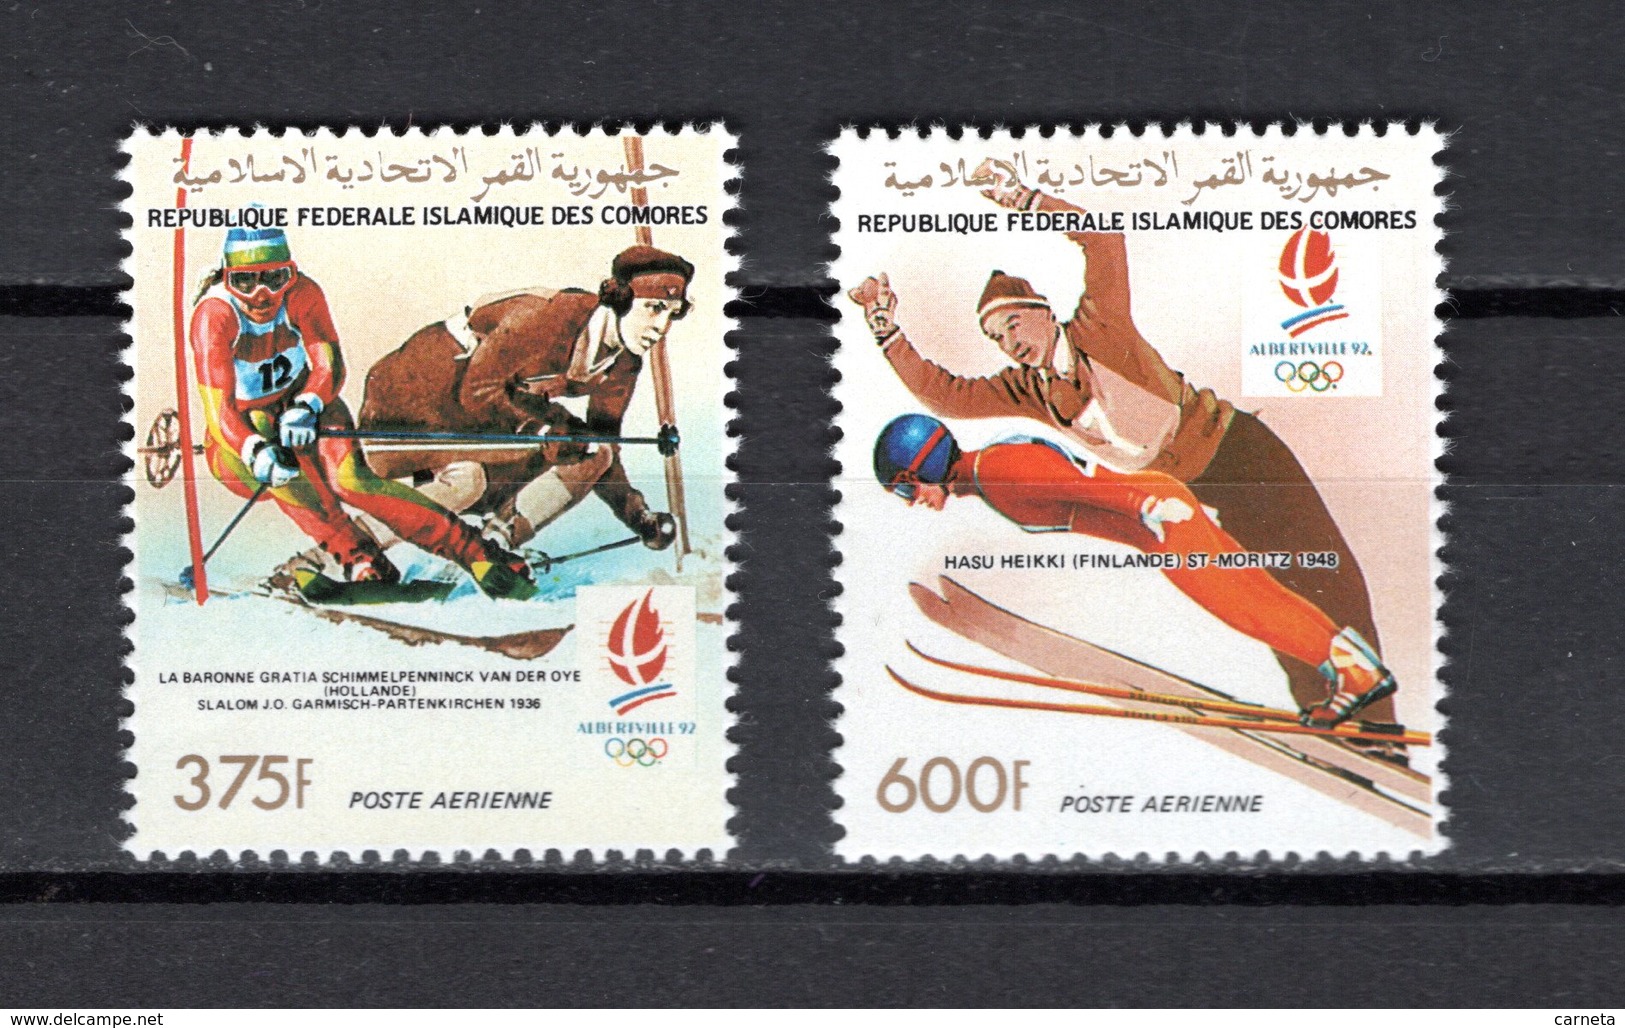 COMORES  PA   N° 296 + 297 NEUFS SANS CHARNIERE  COTE  9.80€  JEUX OLYMPIQUES  ALBERTVILLE  SKI - Isole Comore (1975-...)